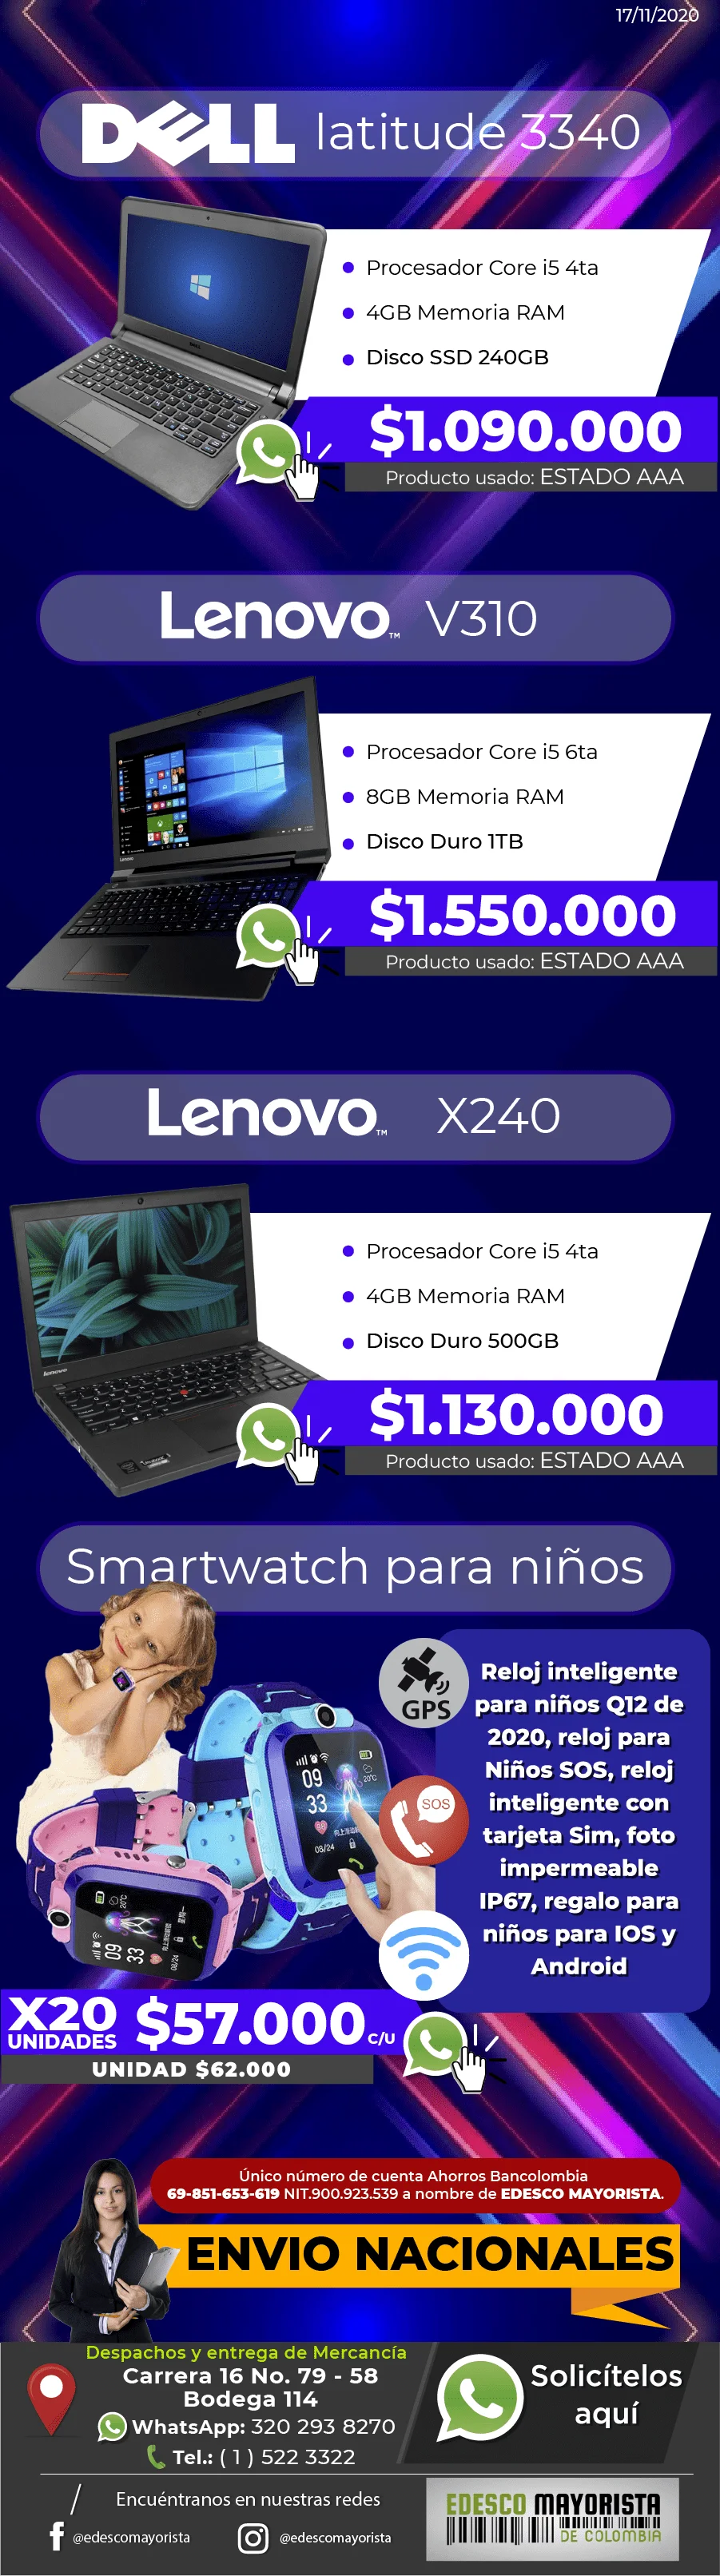 Portátil DELL 3340, Lenovo V310 - X240, Smartwatch para niños